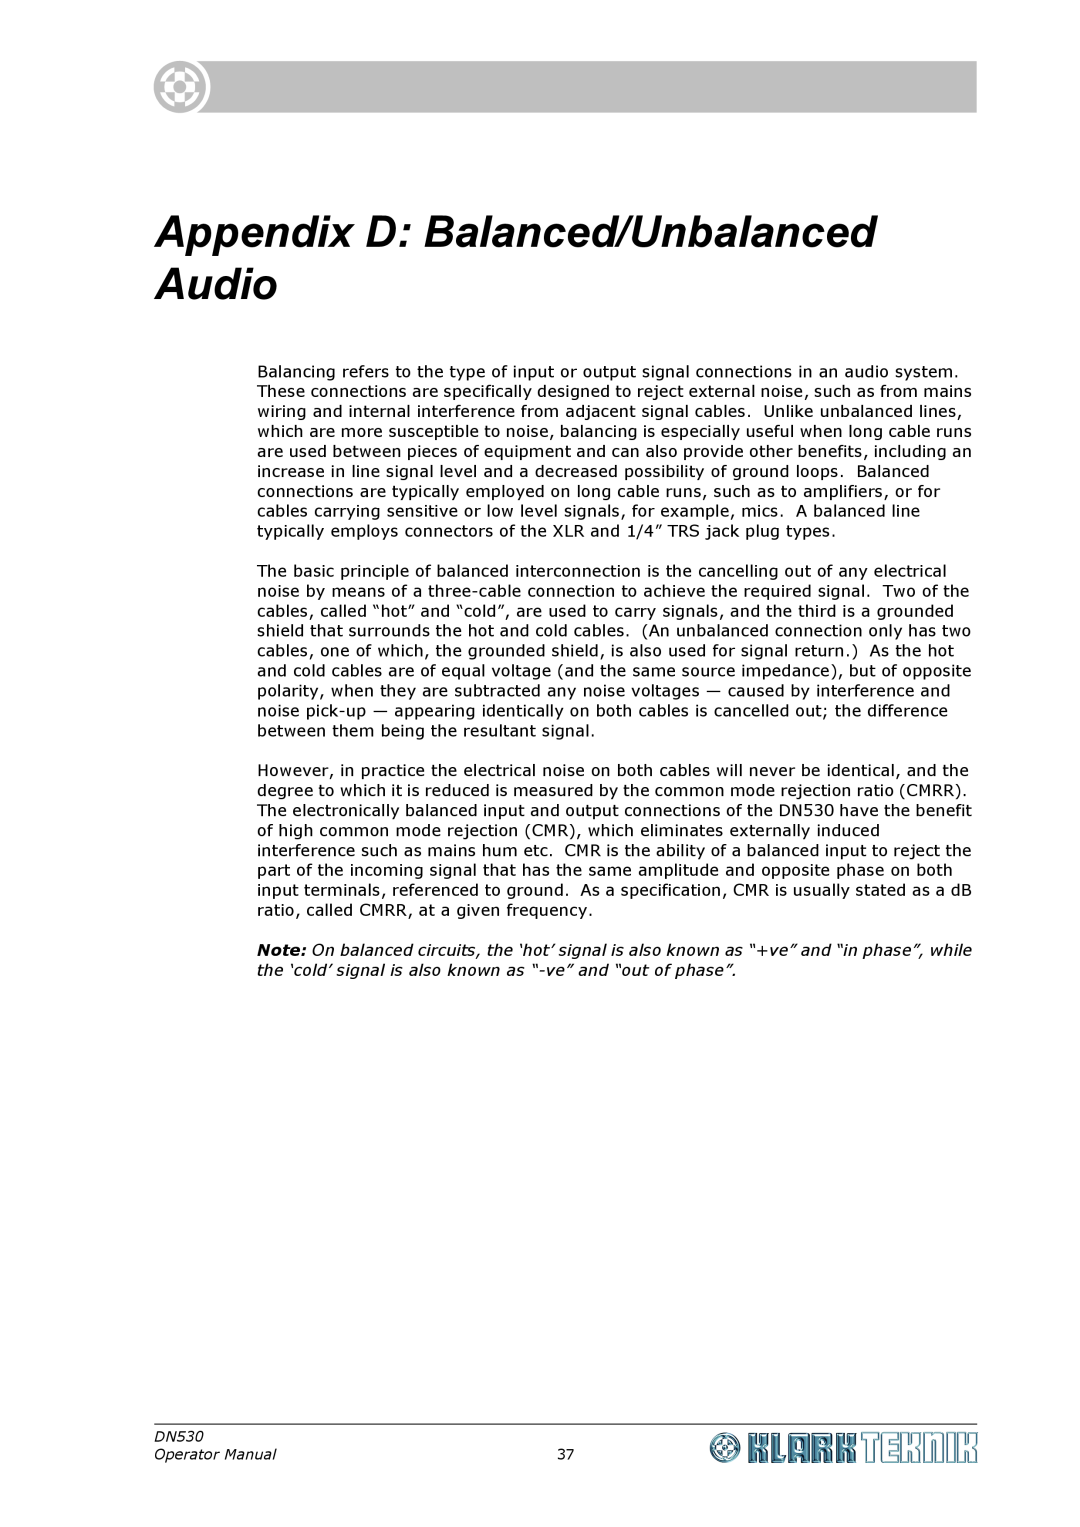 Klark Teknik DN530 specifications Appendix D Balanced/Unbalanced Audio, Operator Manual 